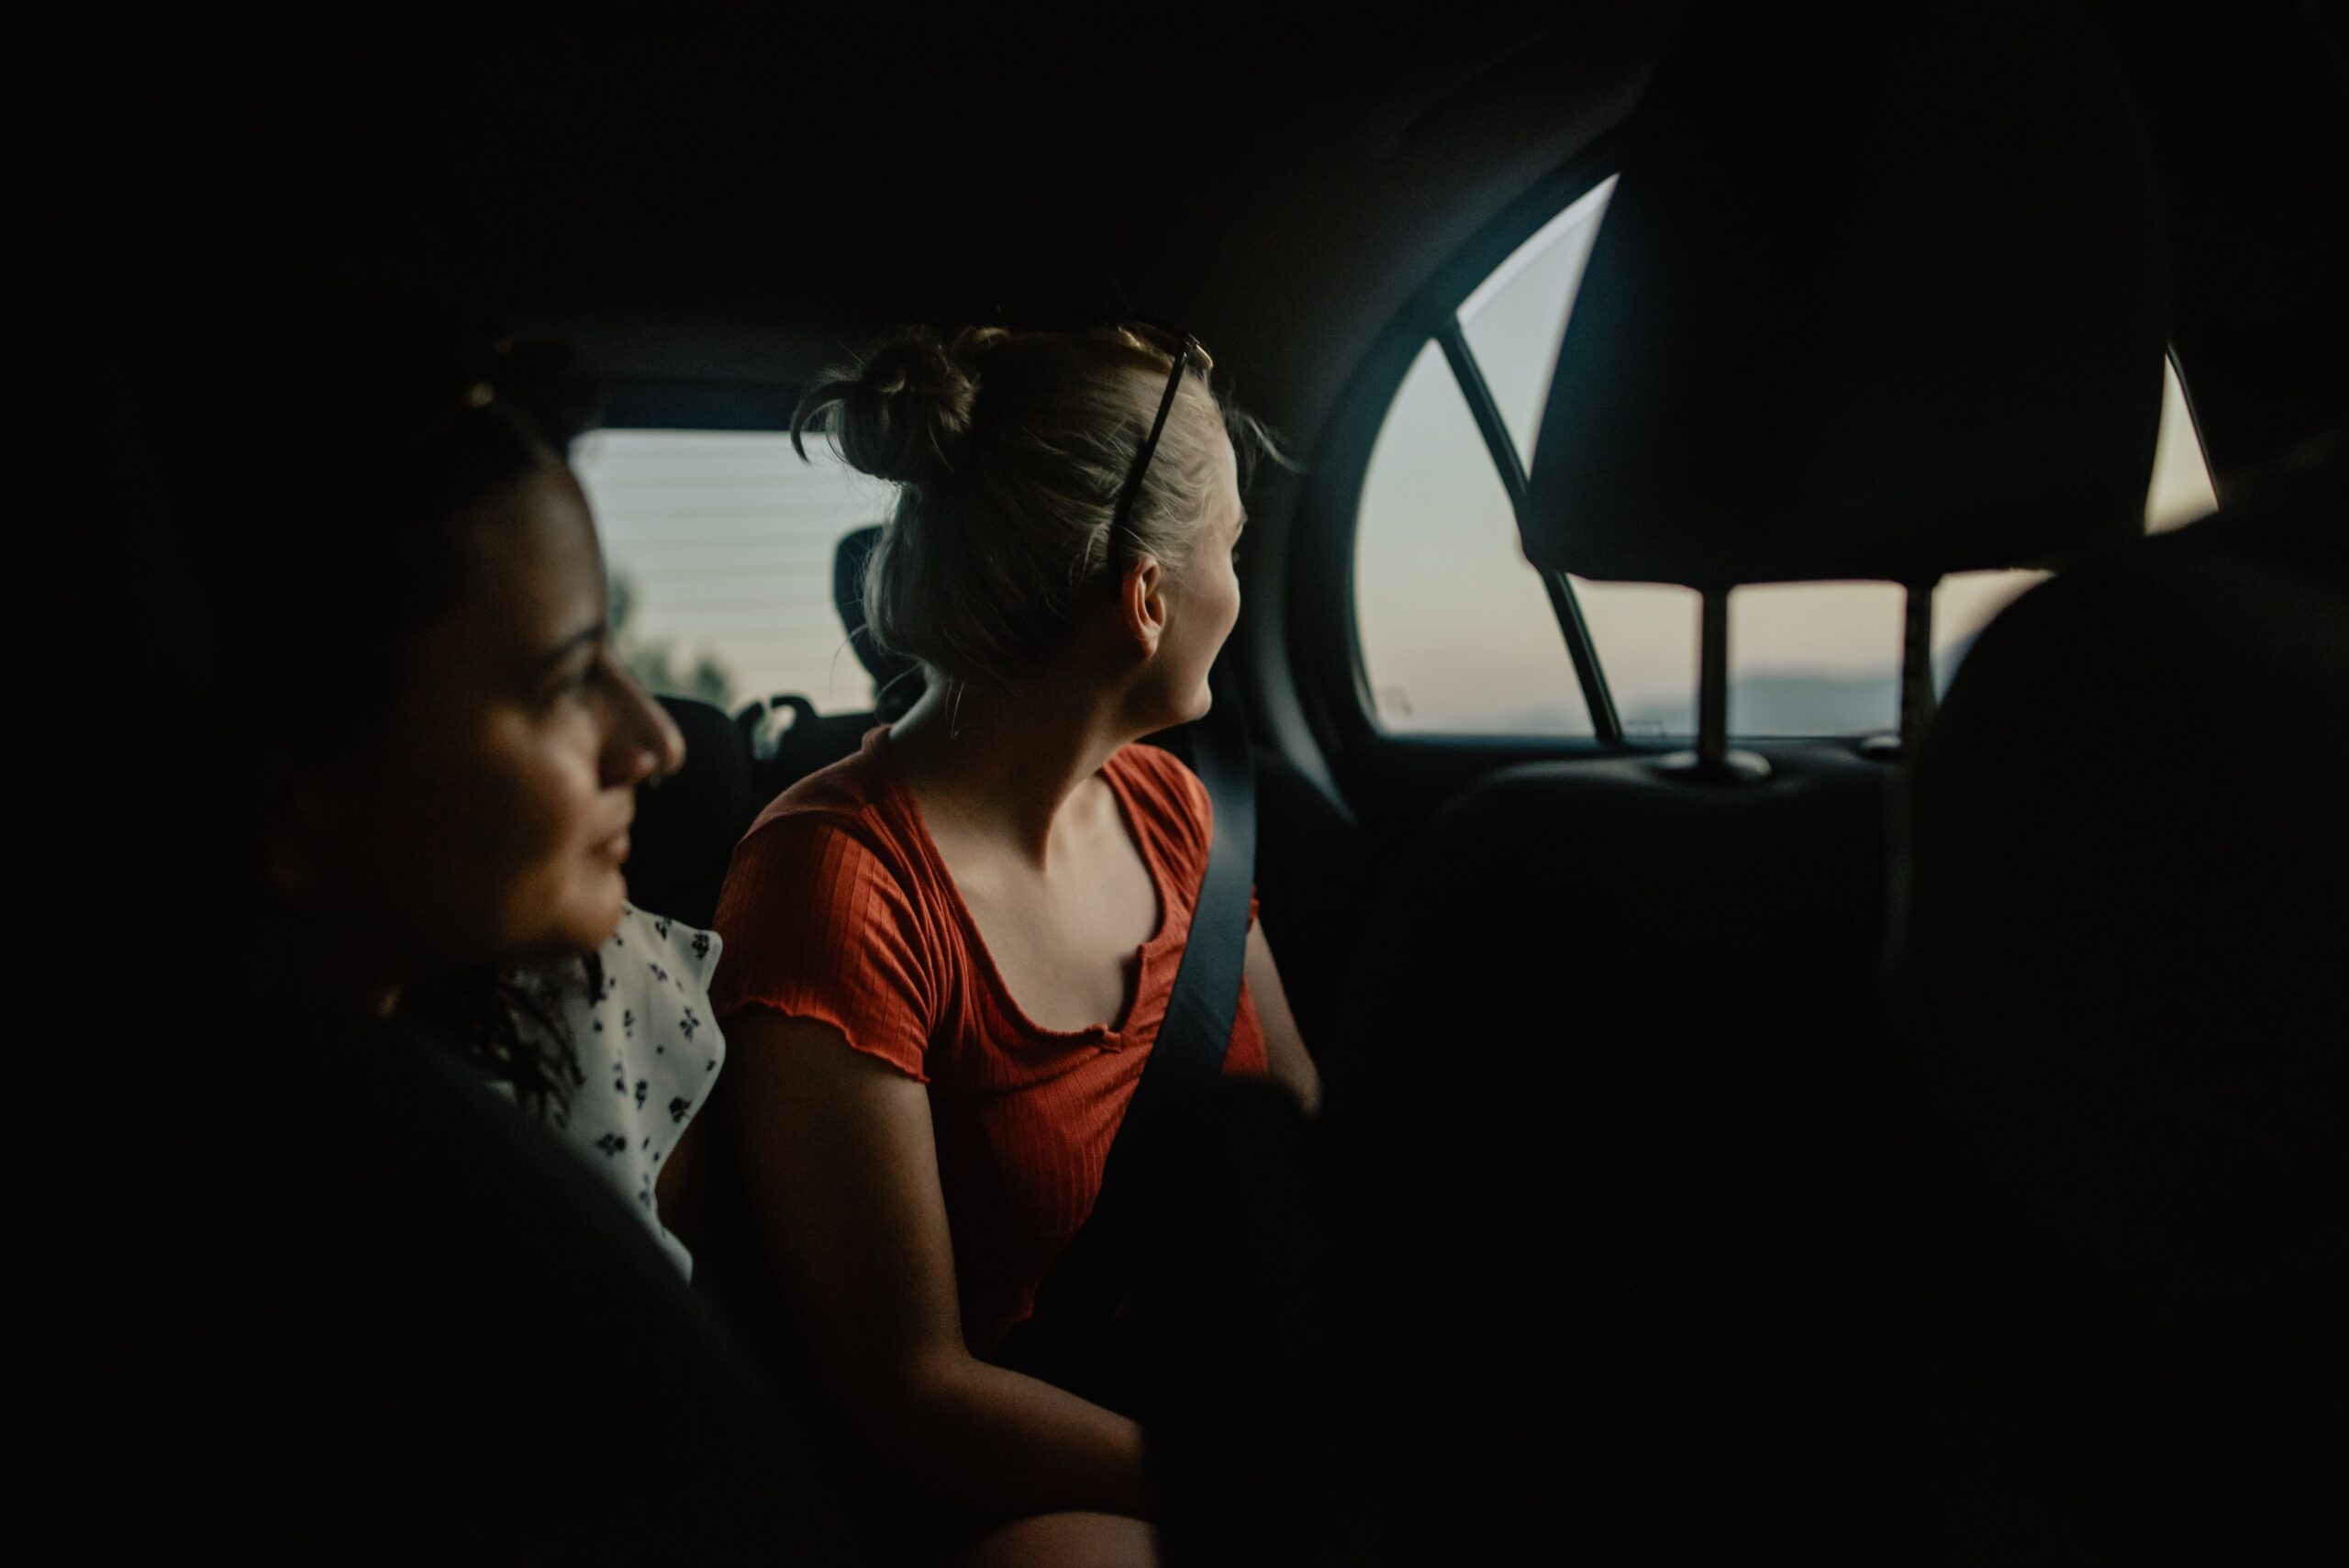 Women looking out of a car window in Cap de Formentor, Spain